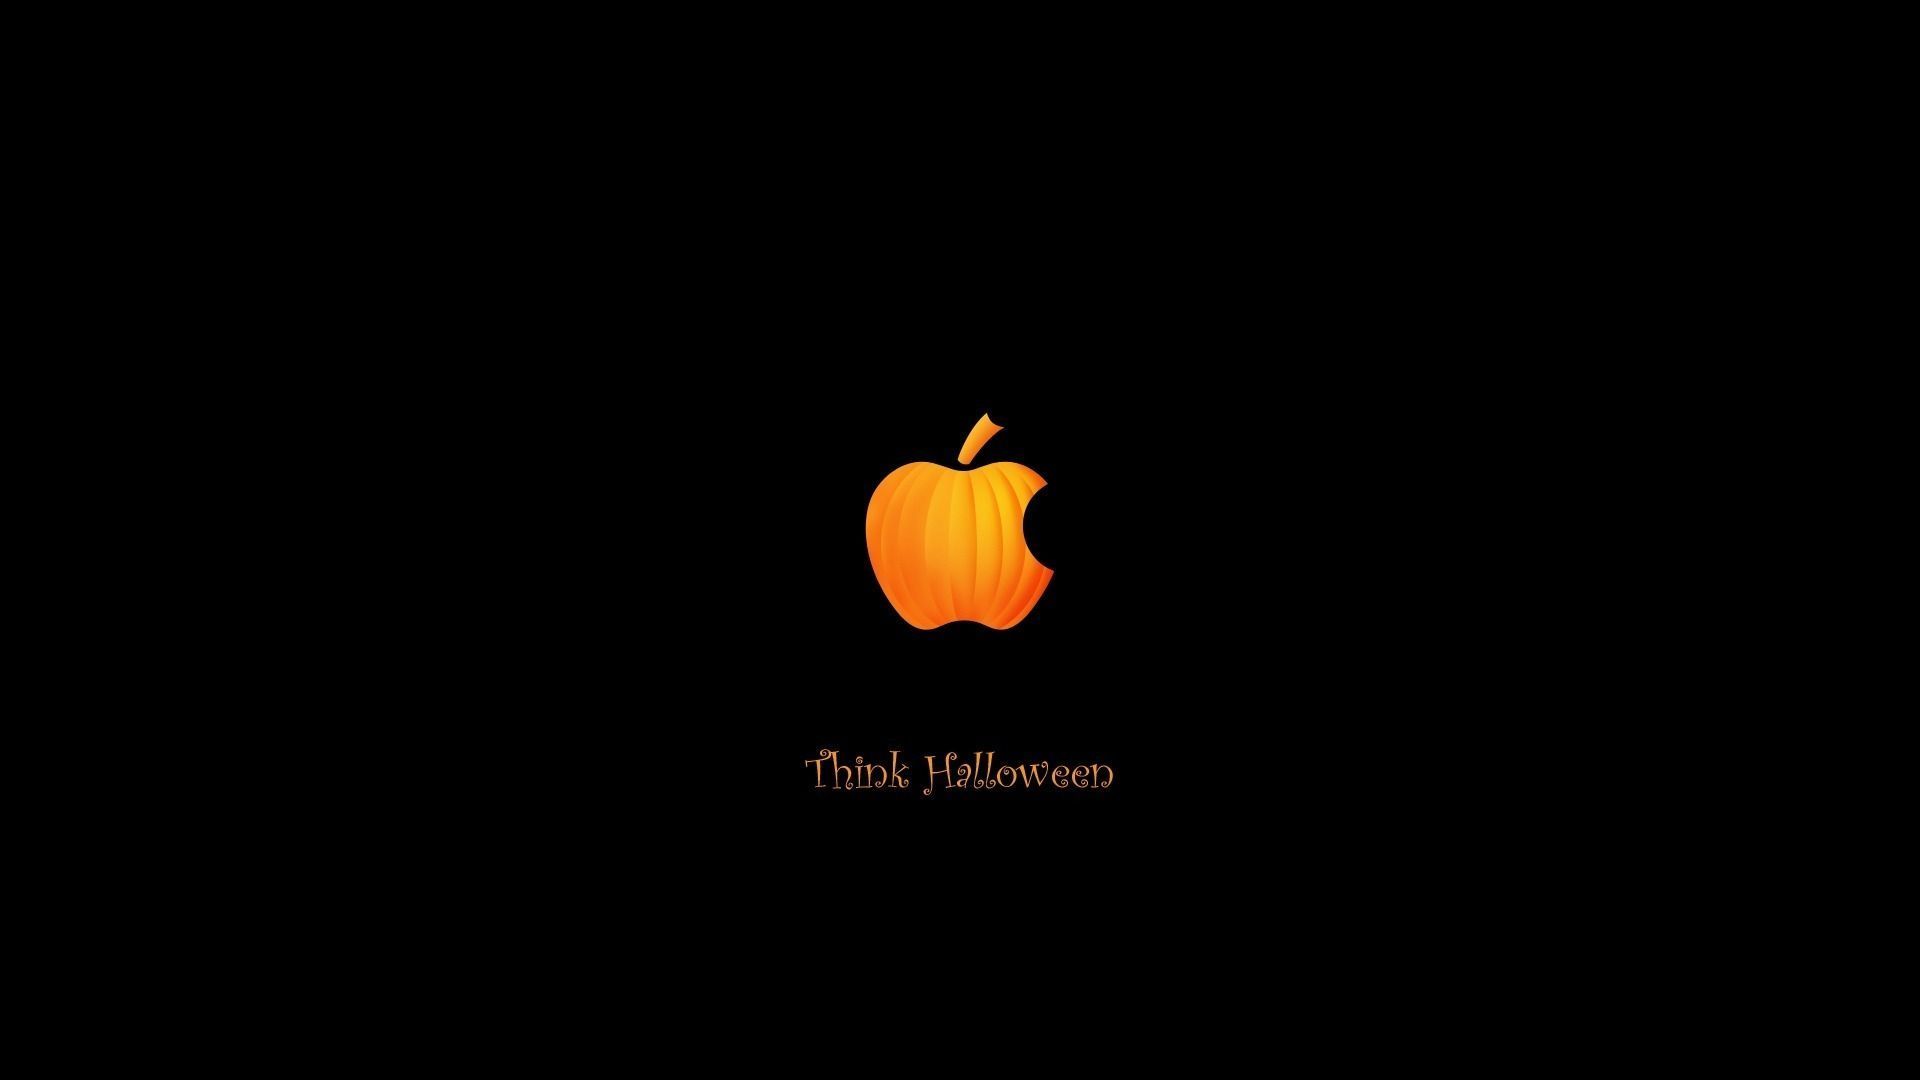 Halloween MacBook Wallpaper Free Halloween MacBook Background